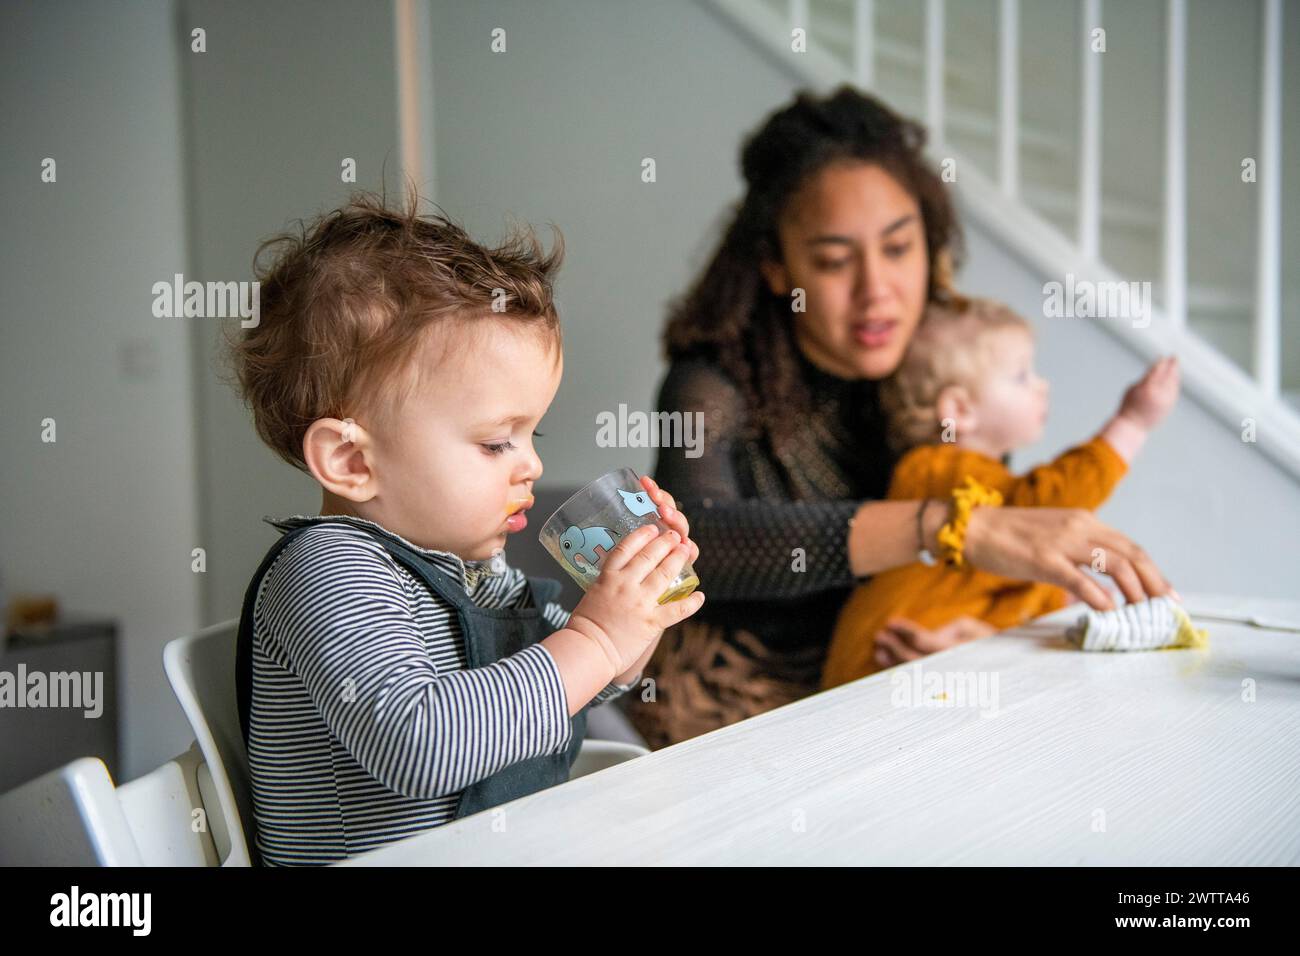 Ein kleines Kind schlürft aus einer Tasse, während eine Mutter am Esstisch über zwei Kinder wacht. Stockfoto